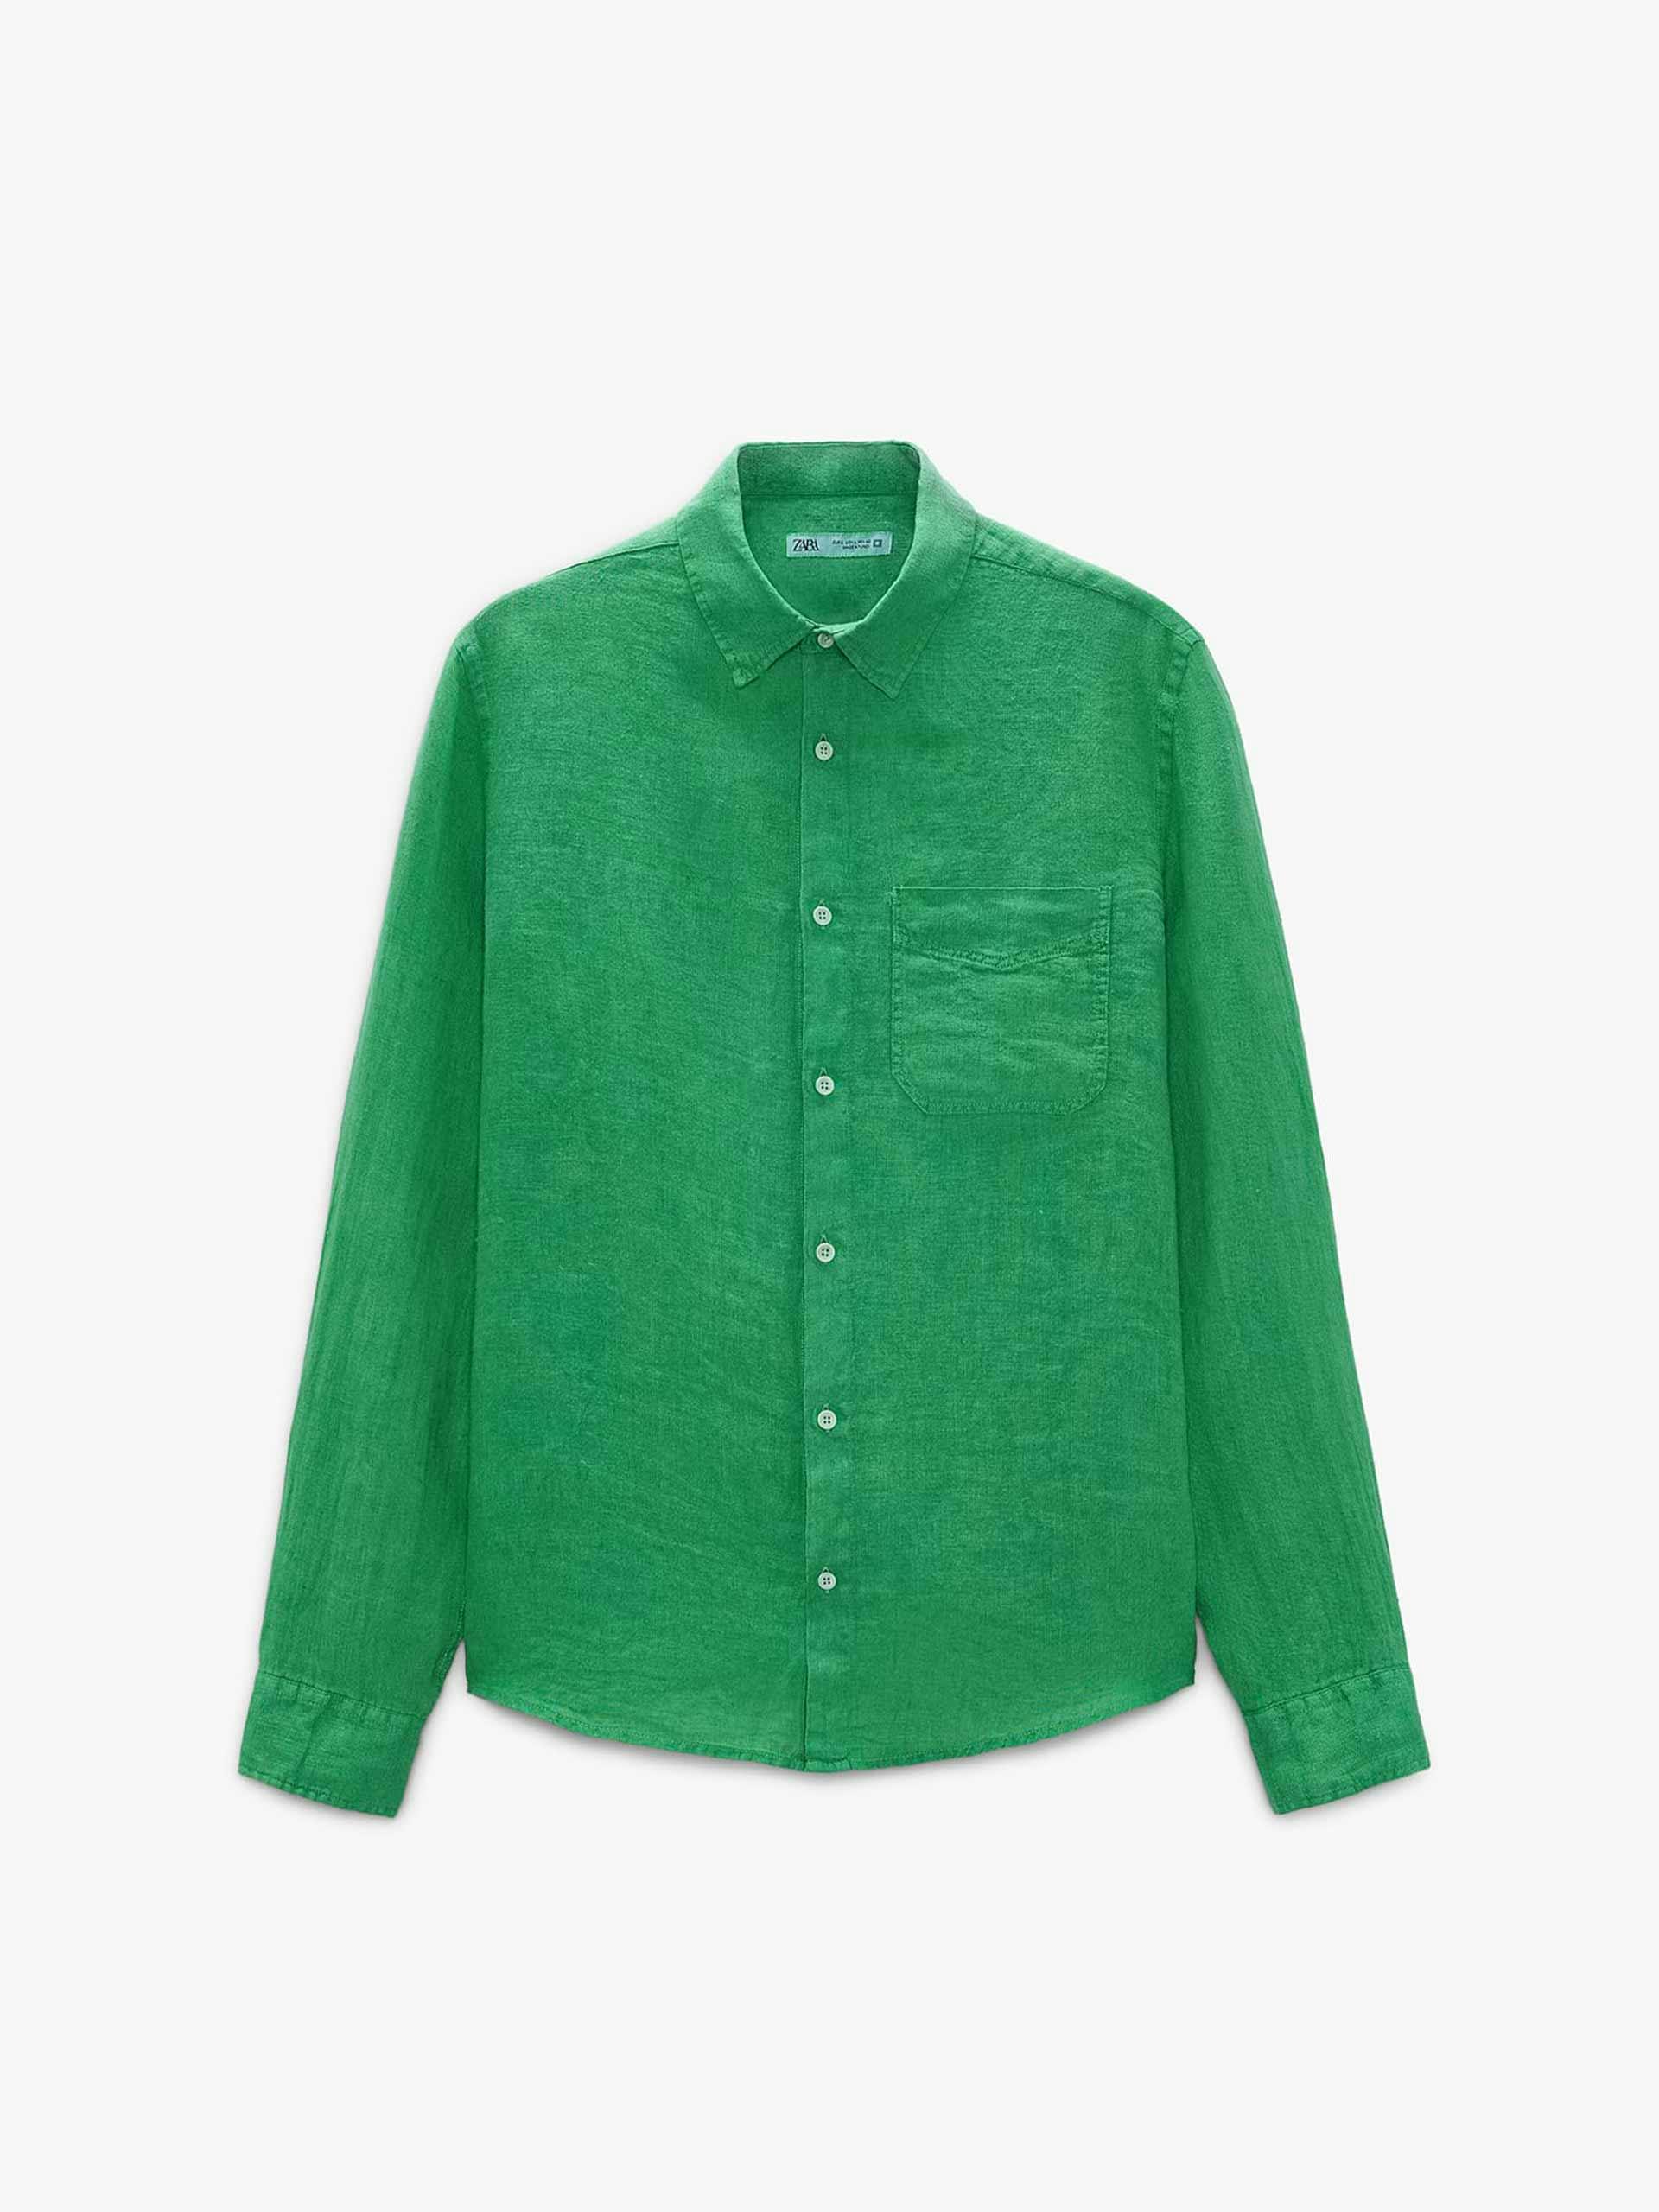 Green linen shirt